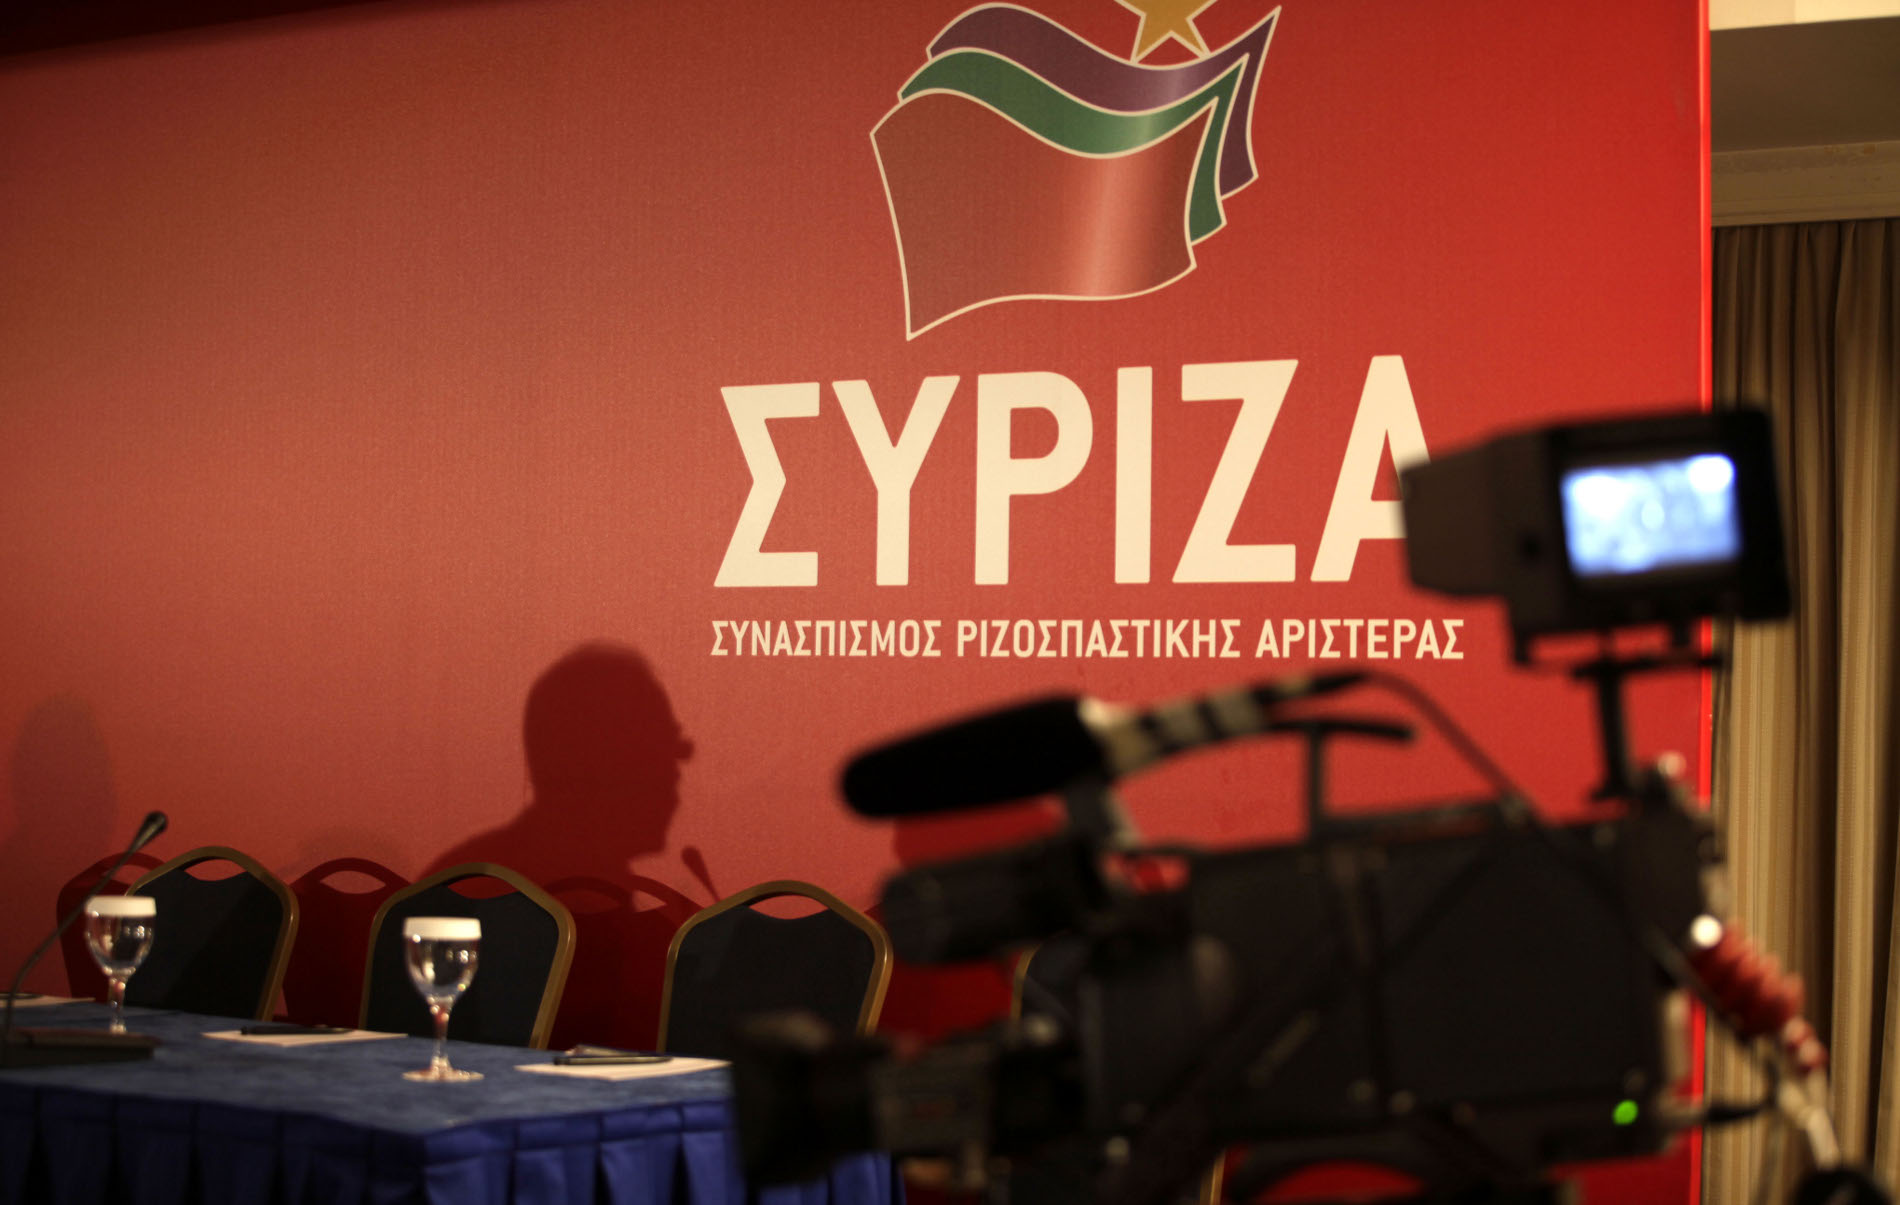 Νέα μέλη με ιδεολογικά κριτήρια ζητεί η Πολιτική Γραμματεία του ΣΥΡΙΖΑ